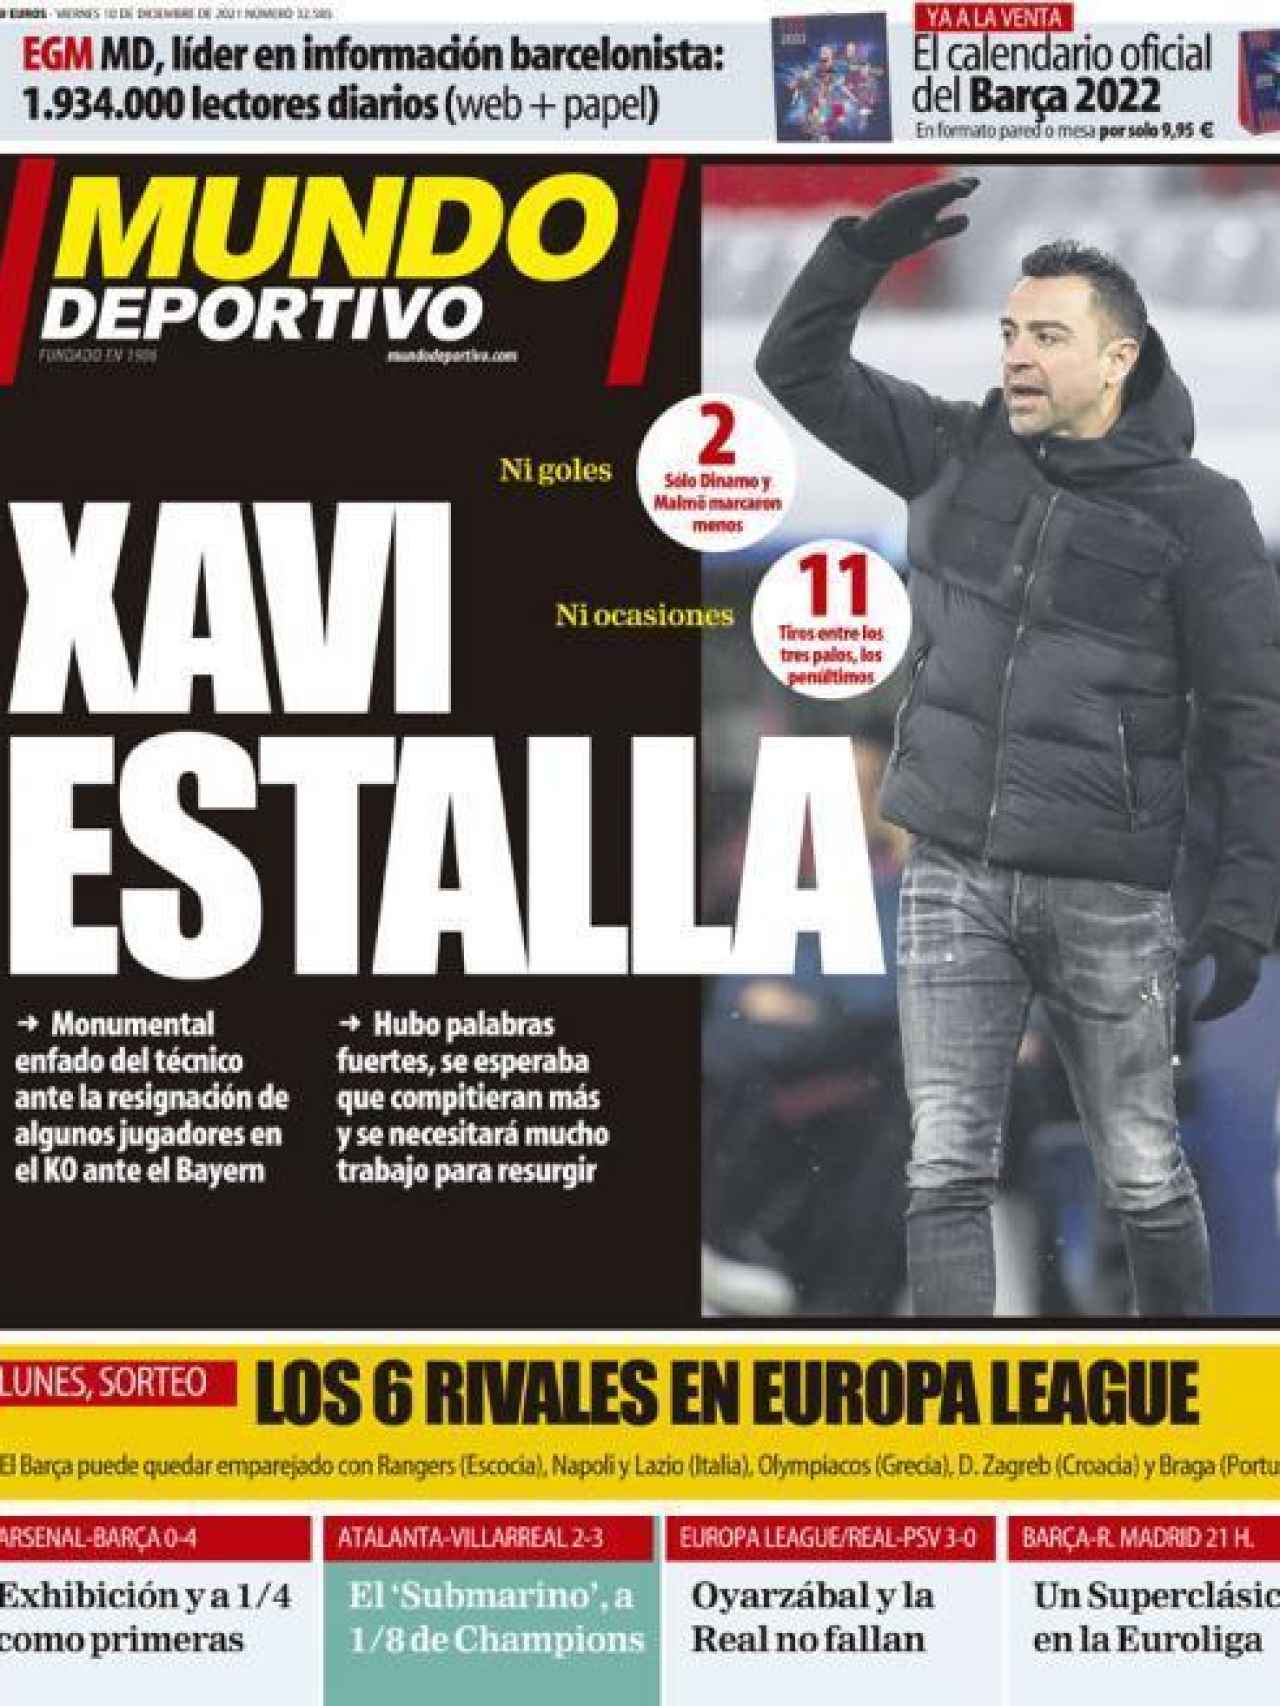 La portada del diario Mundo Deportivo (10/12/2021)